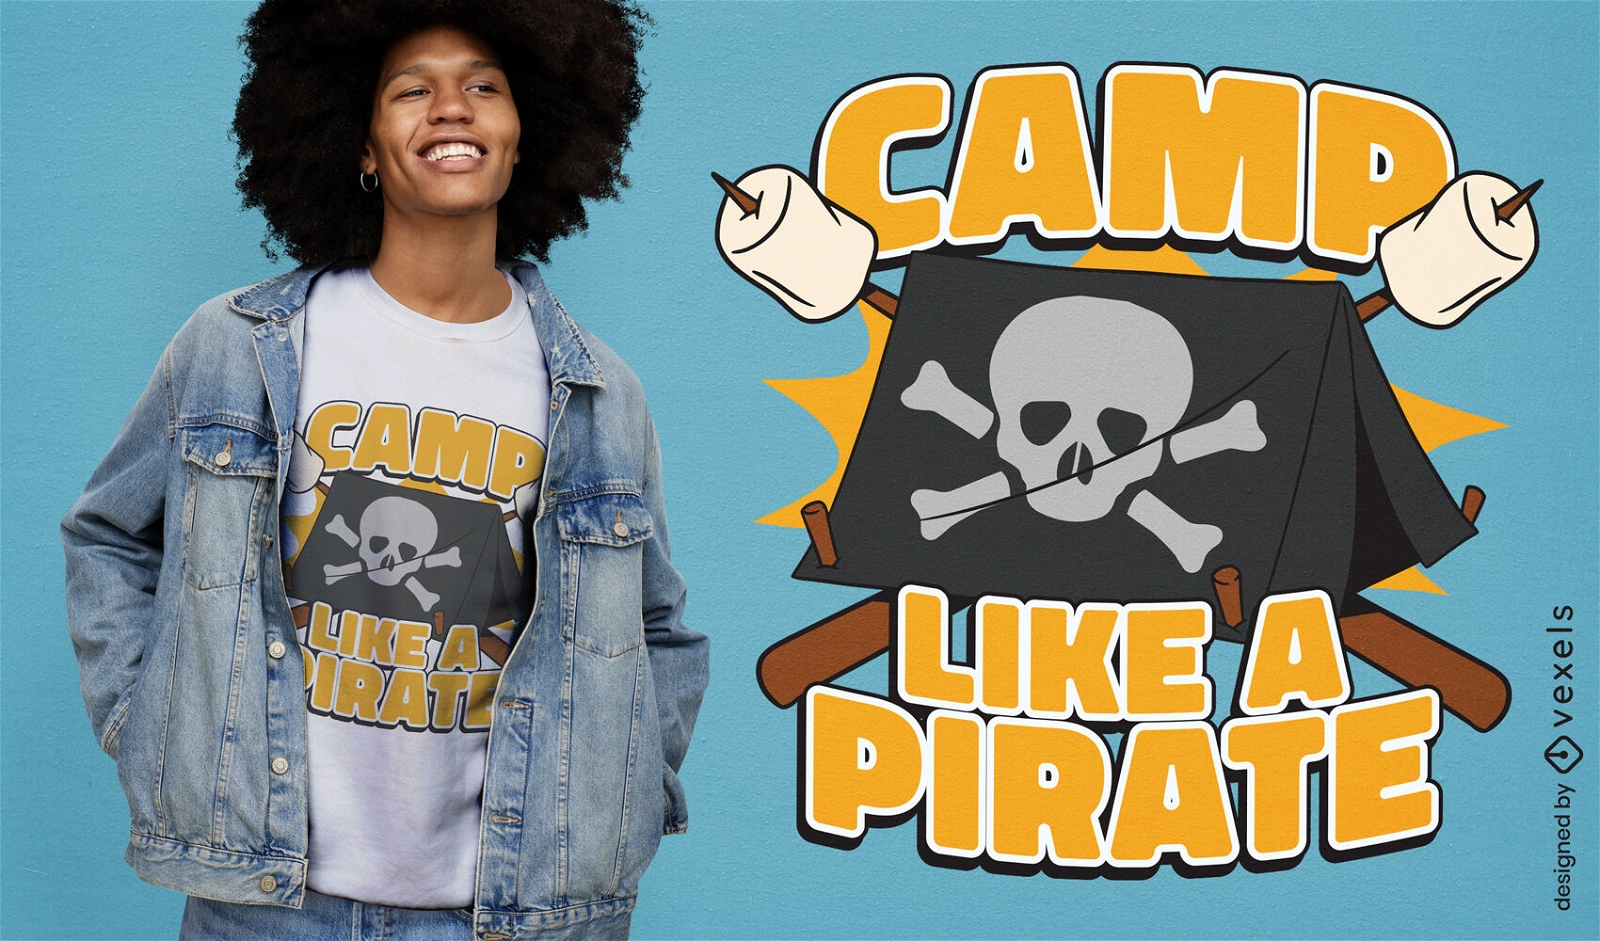 Dise?o cl?sico de camiseta con bandera pirata.